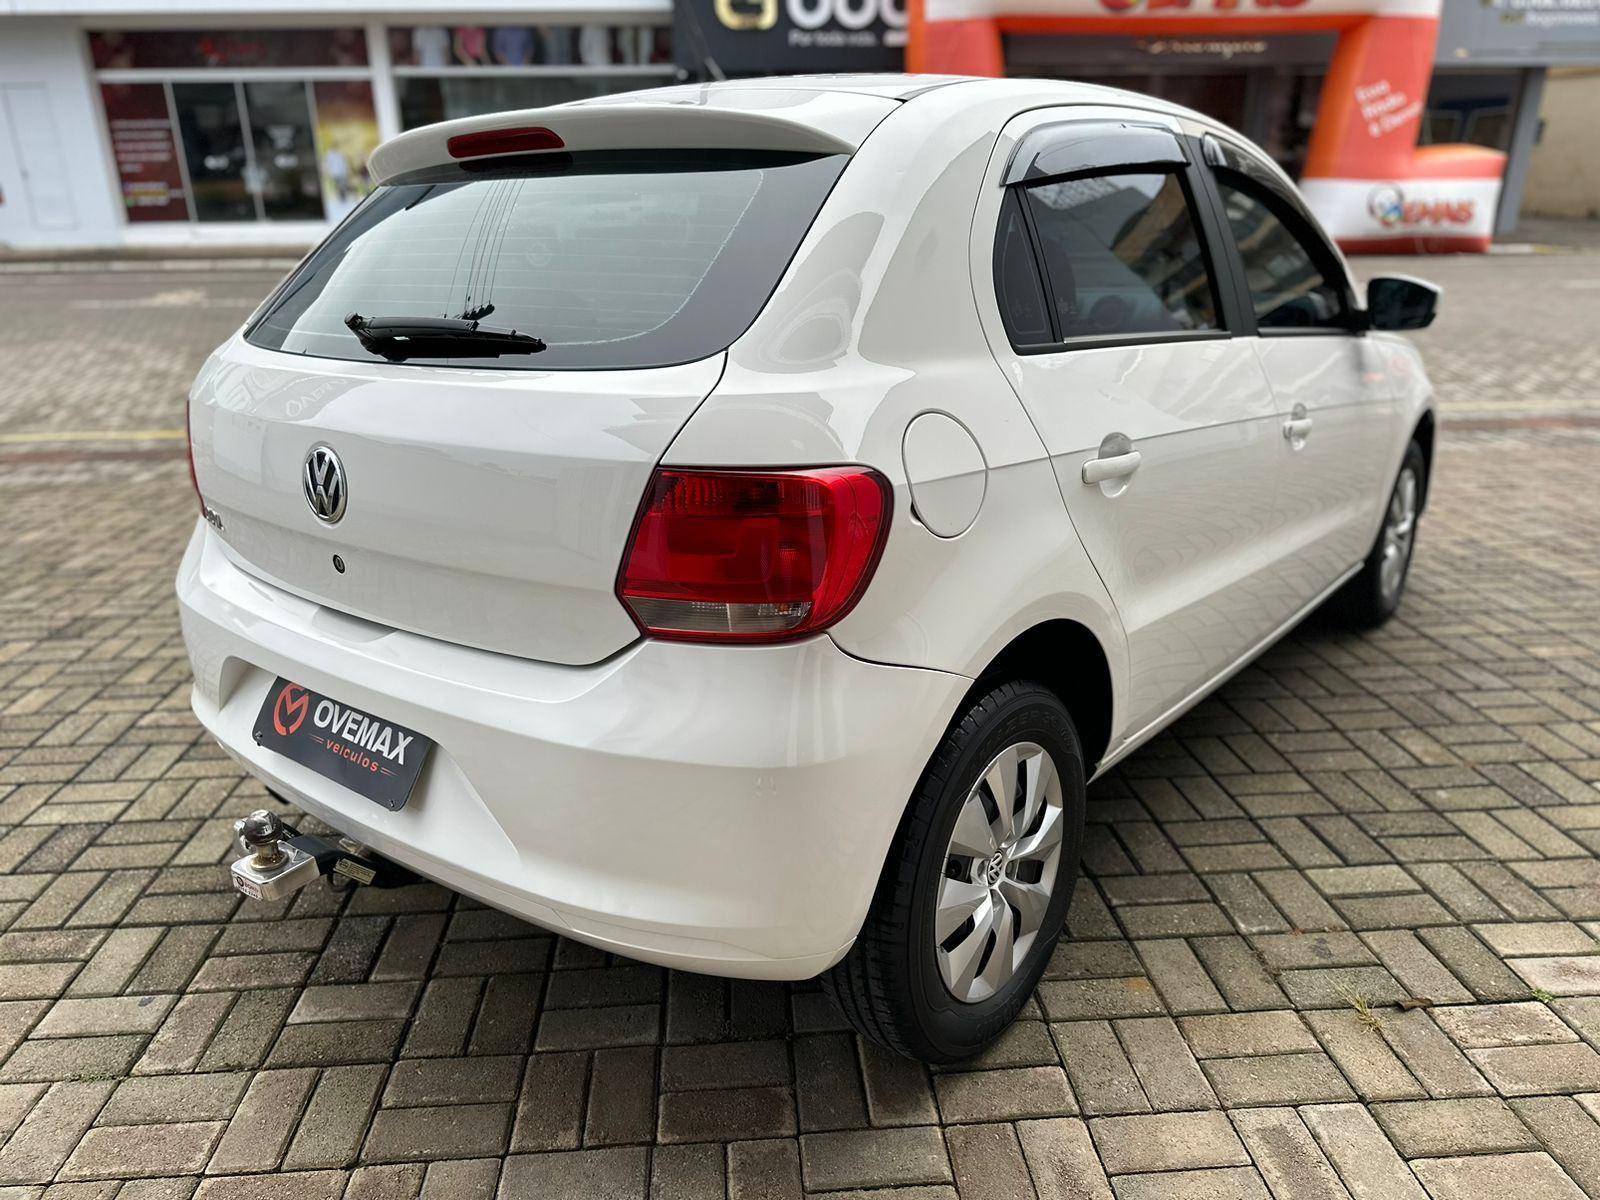 Volkswagen Gol (novo) 1.0 Mi Total Flex 8V 4p 2013 – Ovemax